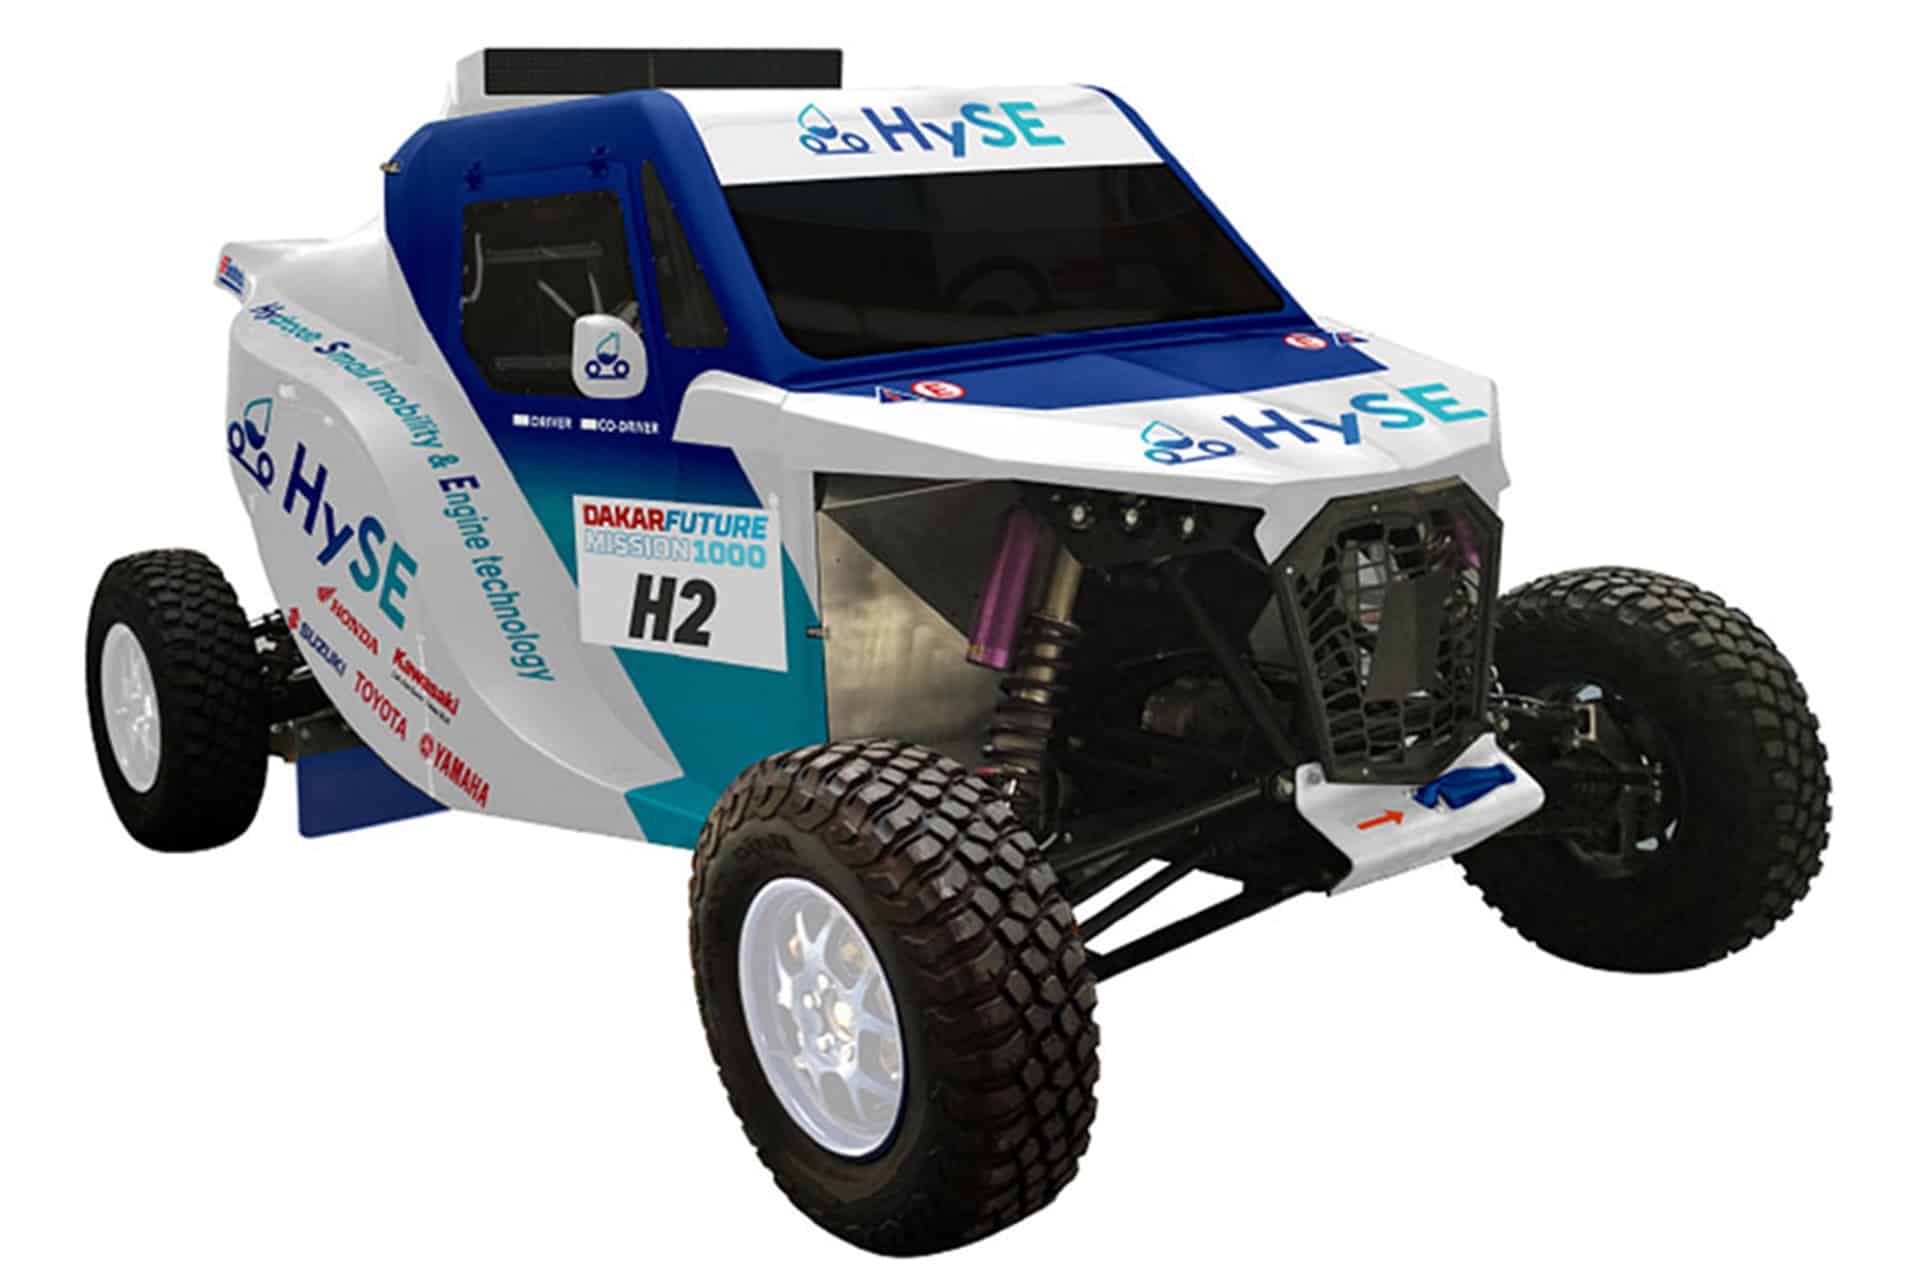 HySE-X1, el buggy de hidrógeno desarrollado por las 4 grandes marcas japonesas